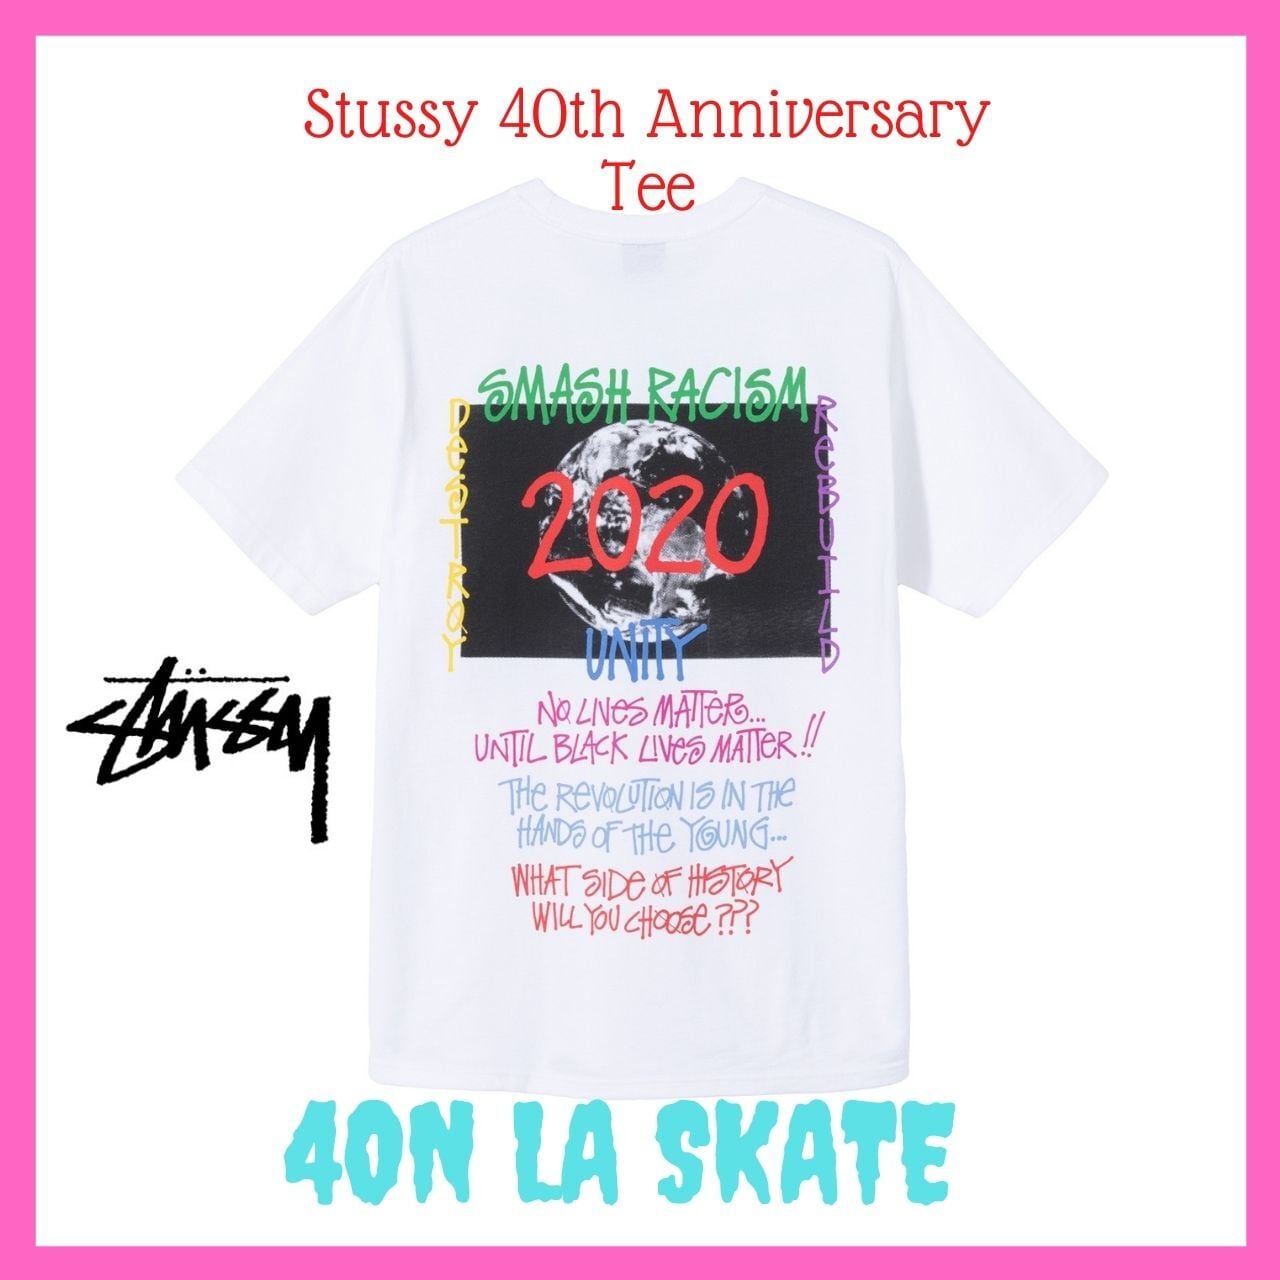 限定品！ステューシー40周年記念Tシャツ白 Lサイズ | 4ON LA SKATE